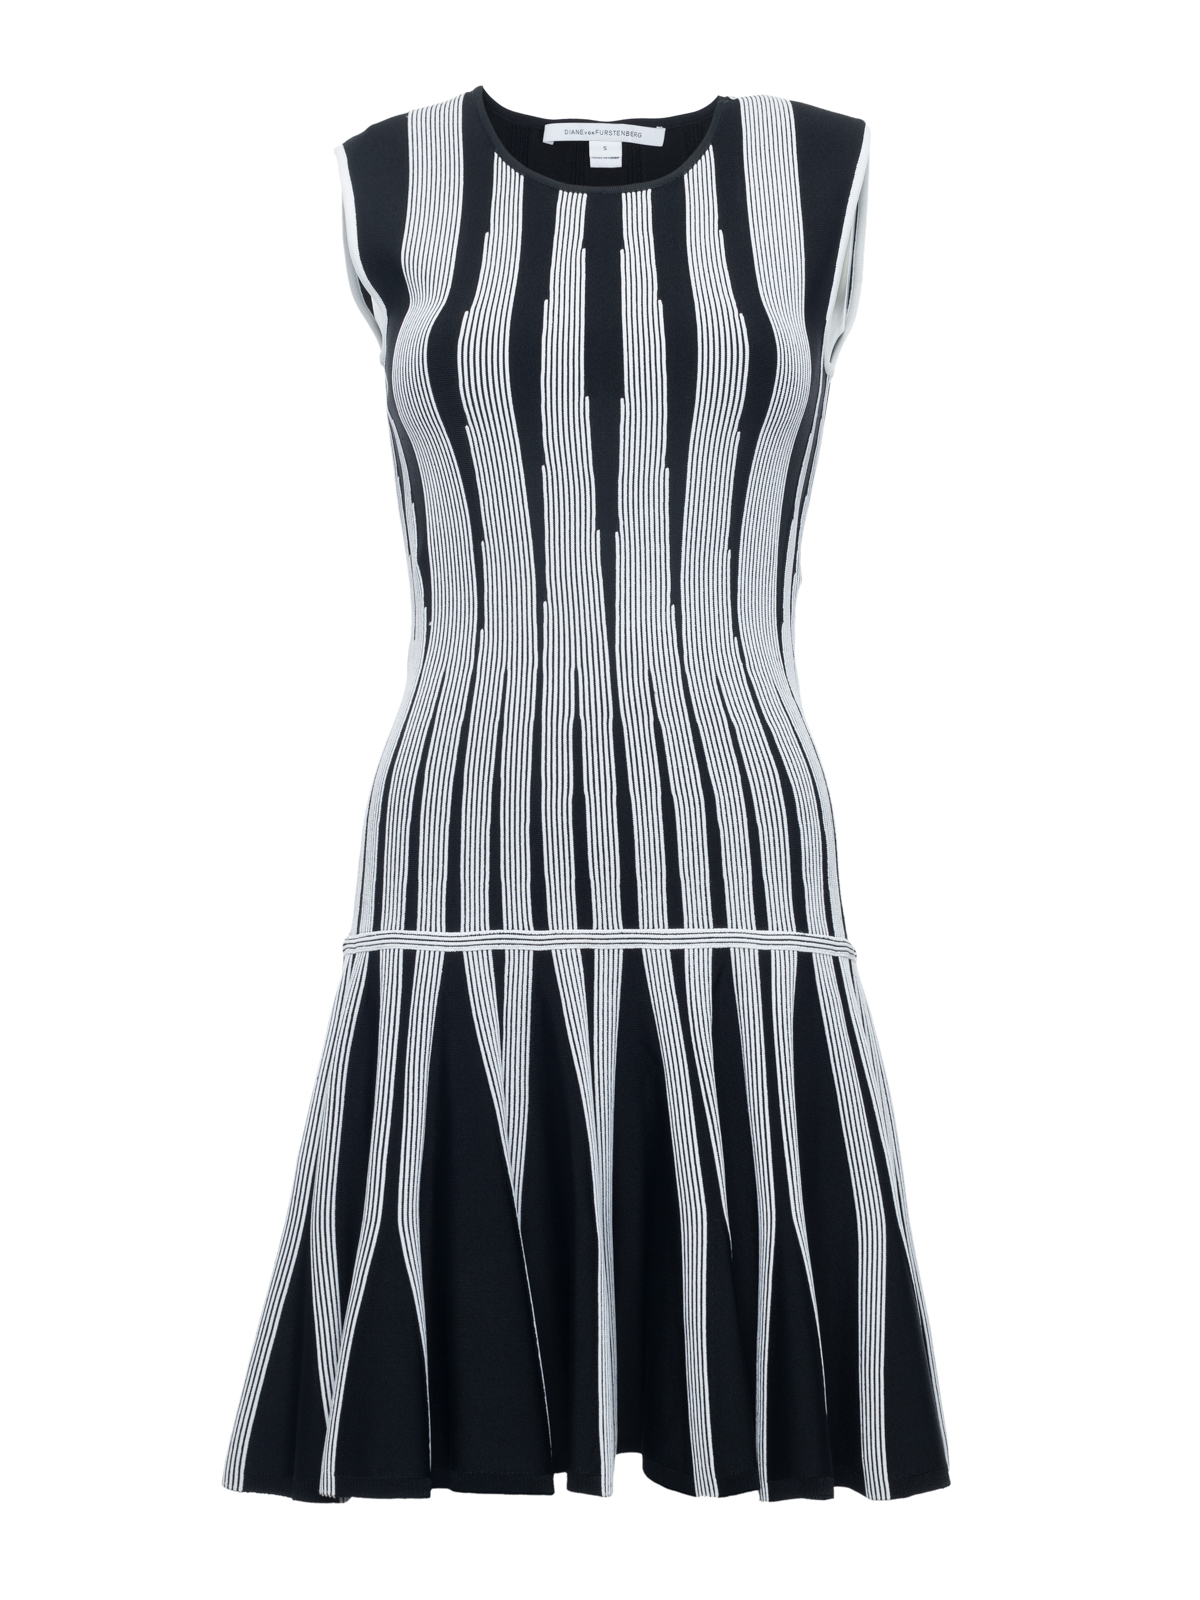 Diane Von Furstenberg Black Striped Stretch Knit Dress